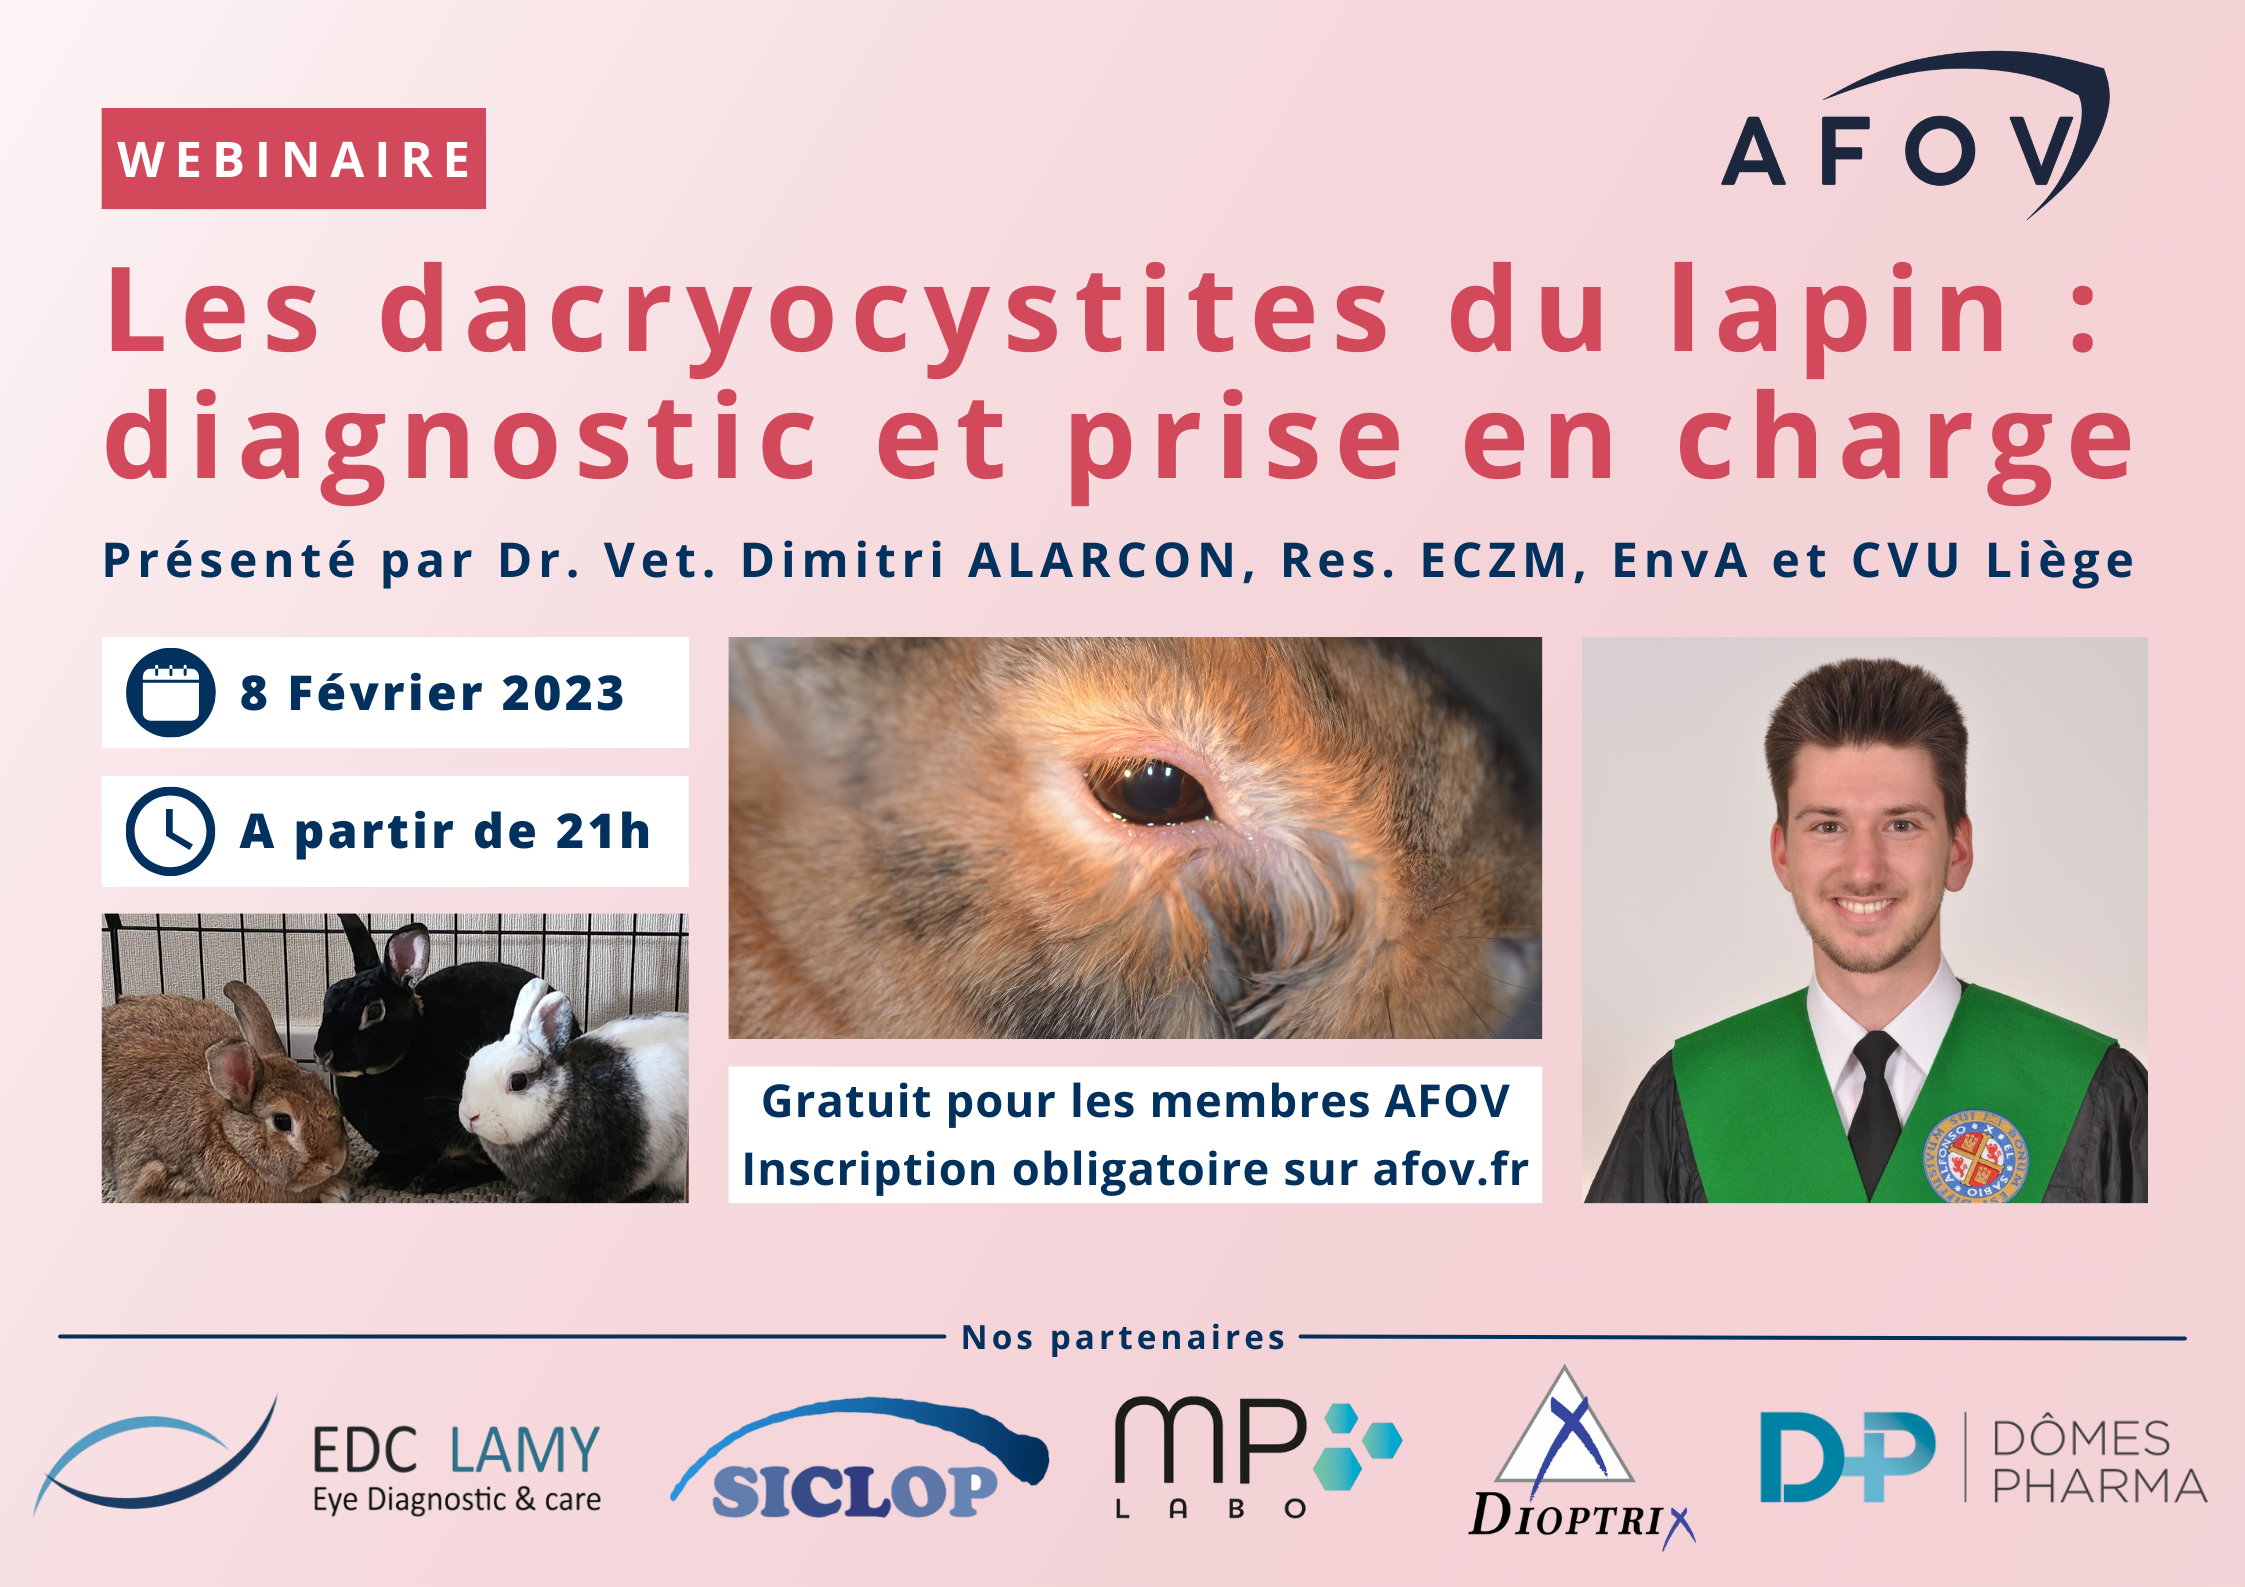 La dacryocystite chez le lapin : diagnostic et traitement – Dr Dimitri ALARCON